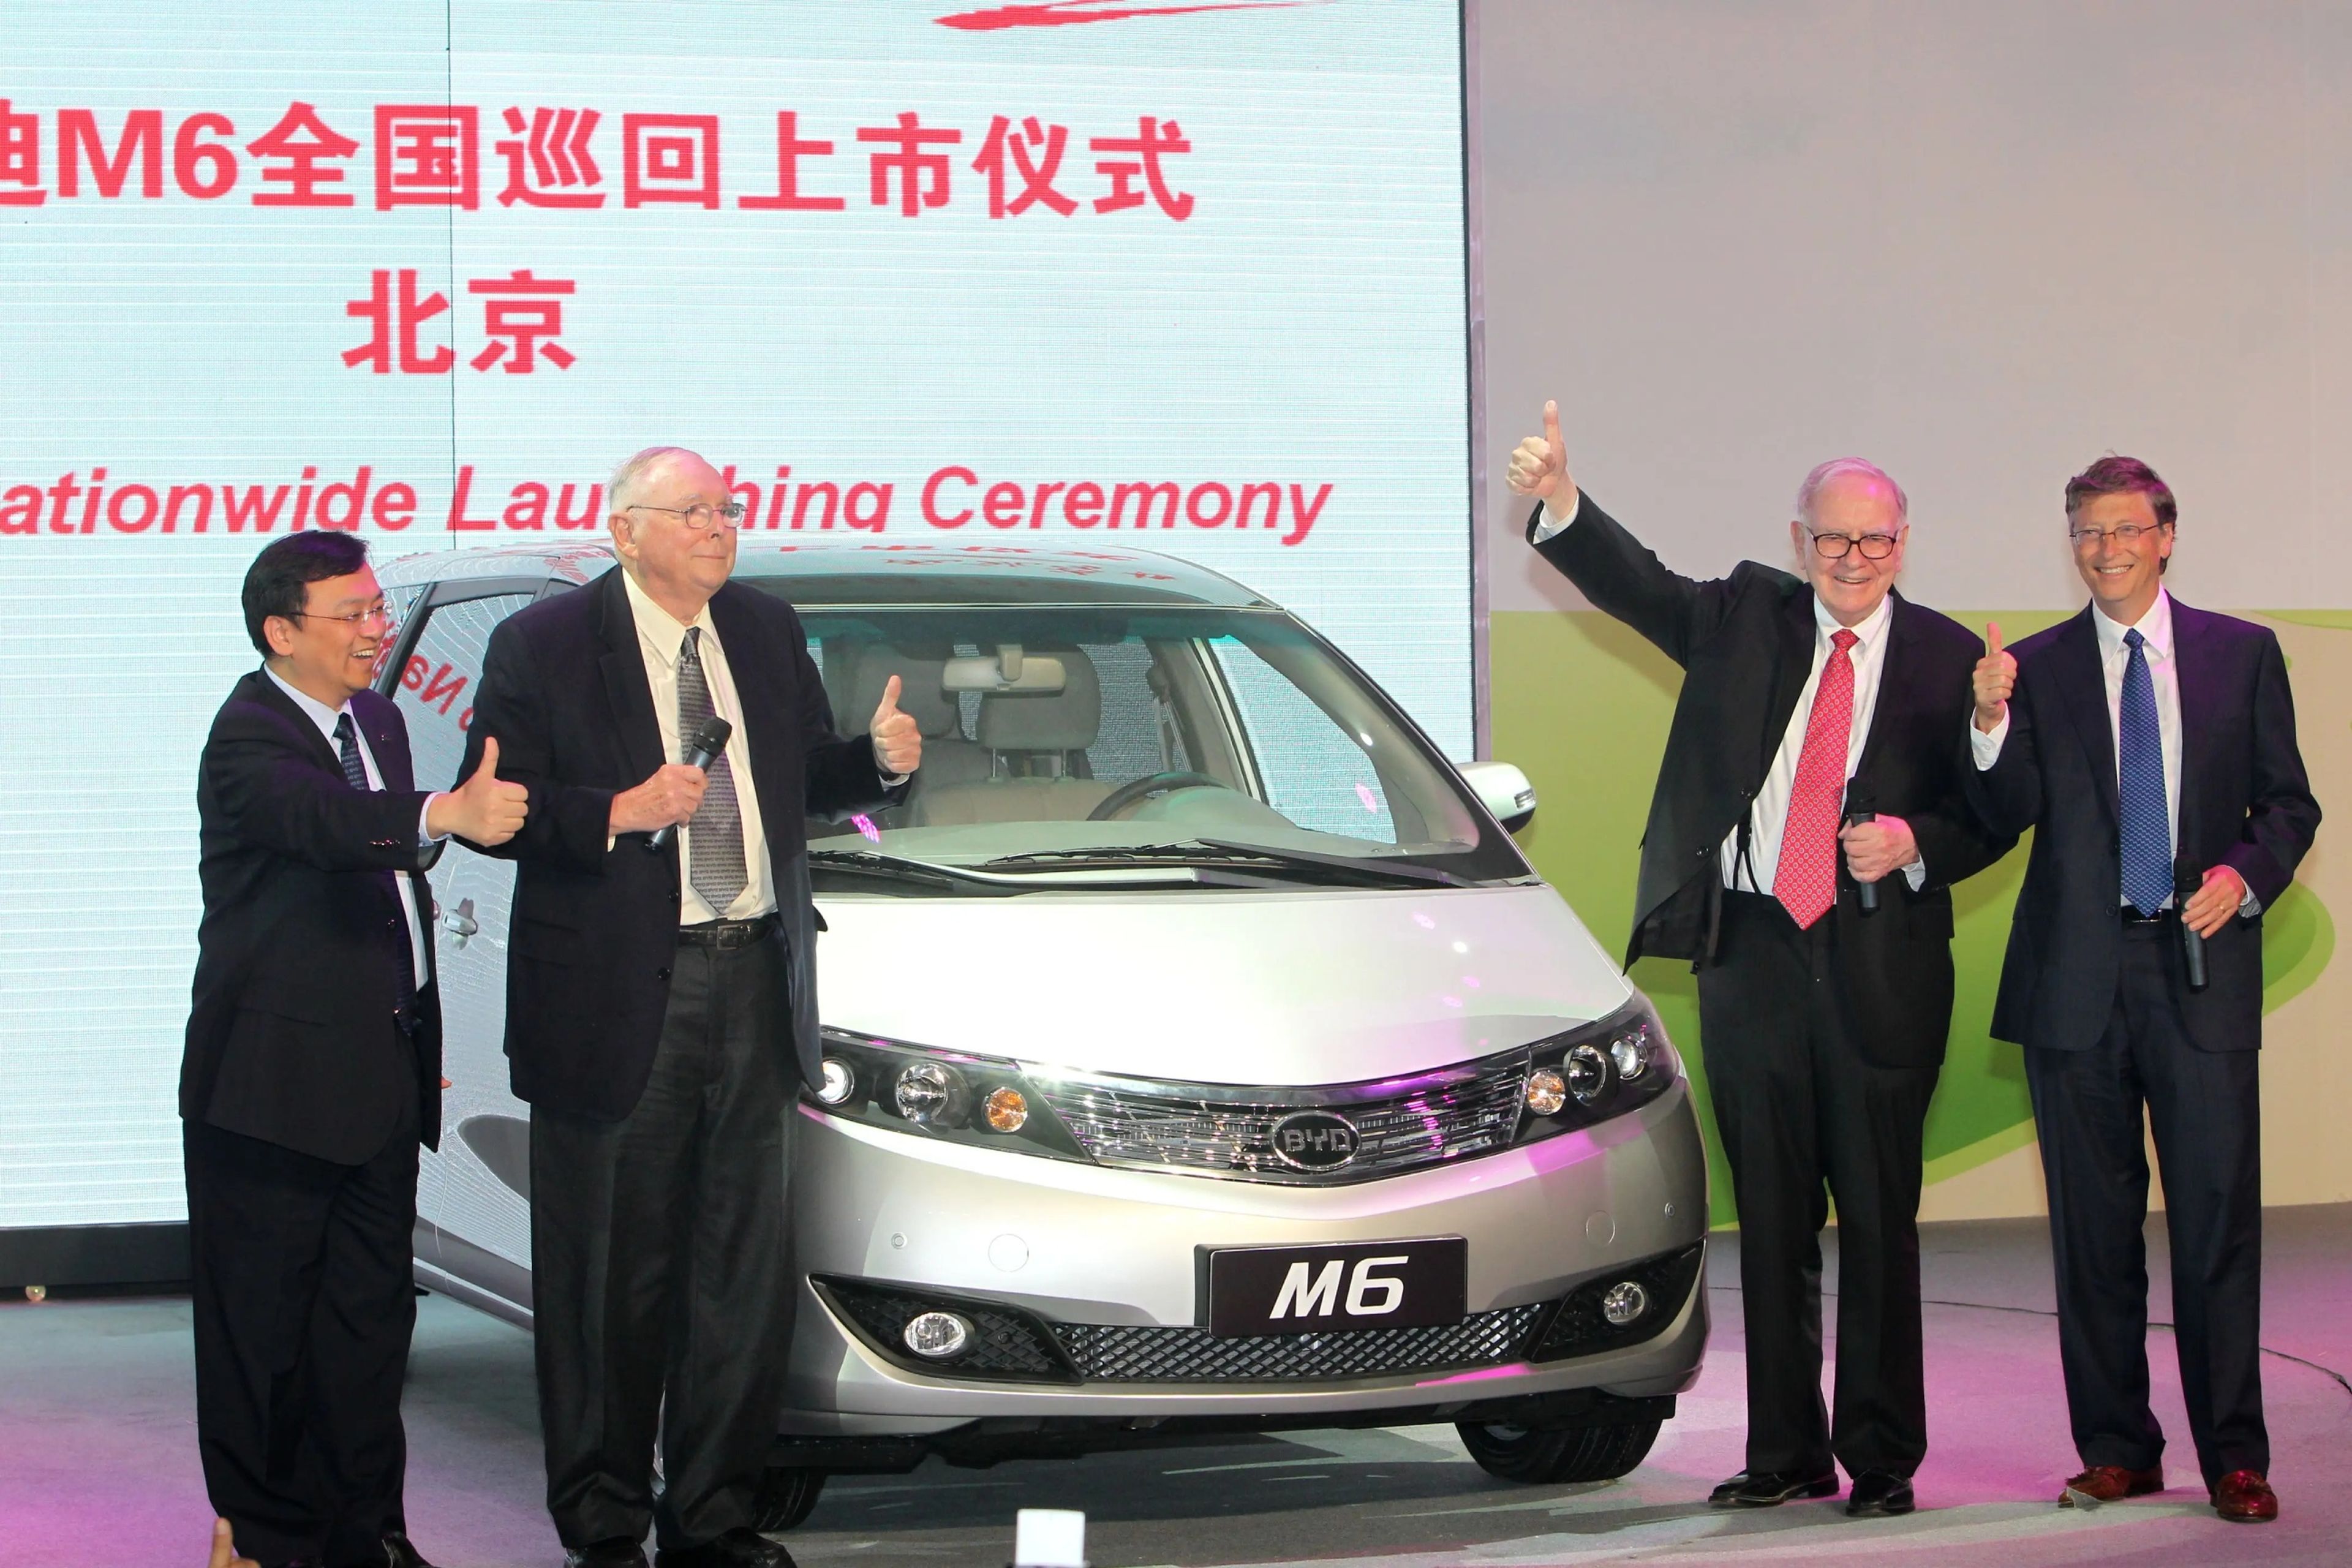 Wang Chuanfu (izquierda) recibió a los inversores Charlie Munger, Warren Buffett y Bill Gates para celebrar el lanzamiento del BYD M6 en 2010.